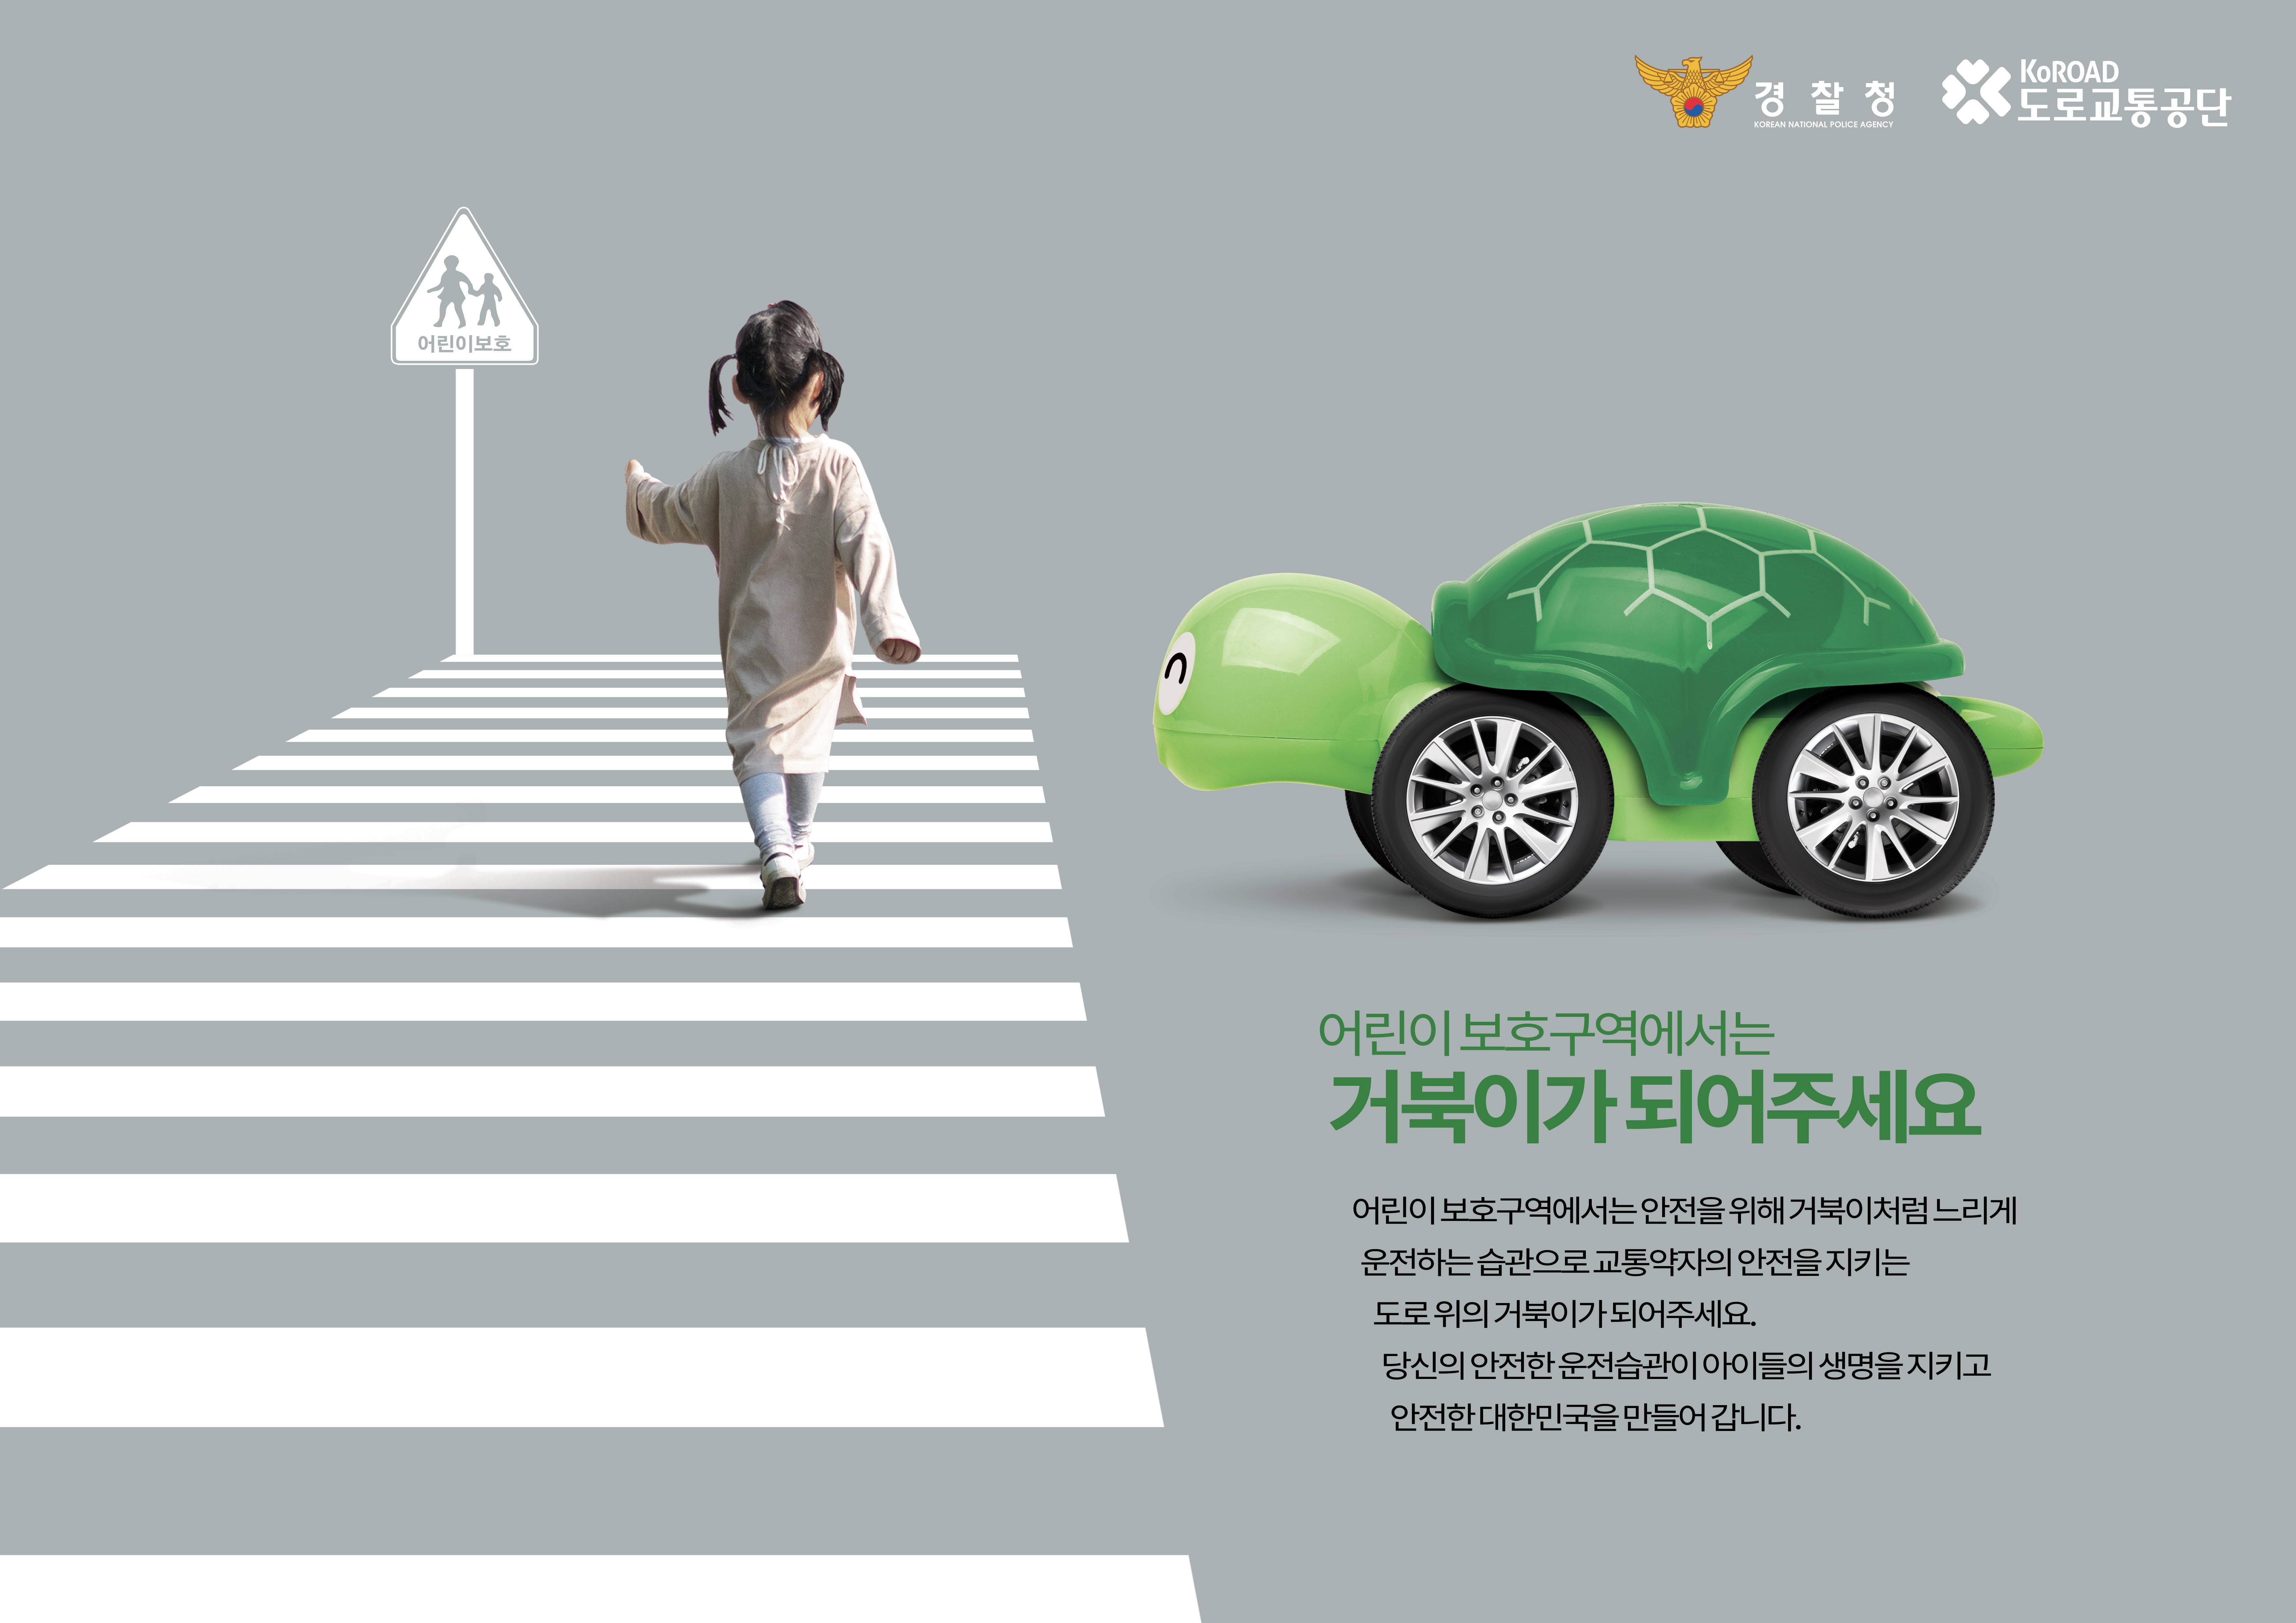 [도로교통공단] 안전운전 홍보 캠페인 "(어린이보호구역) 도로위의 거북이" 이미지1